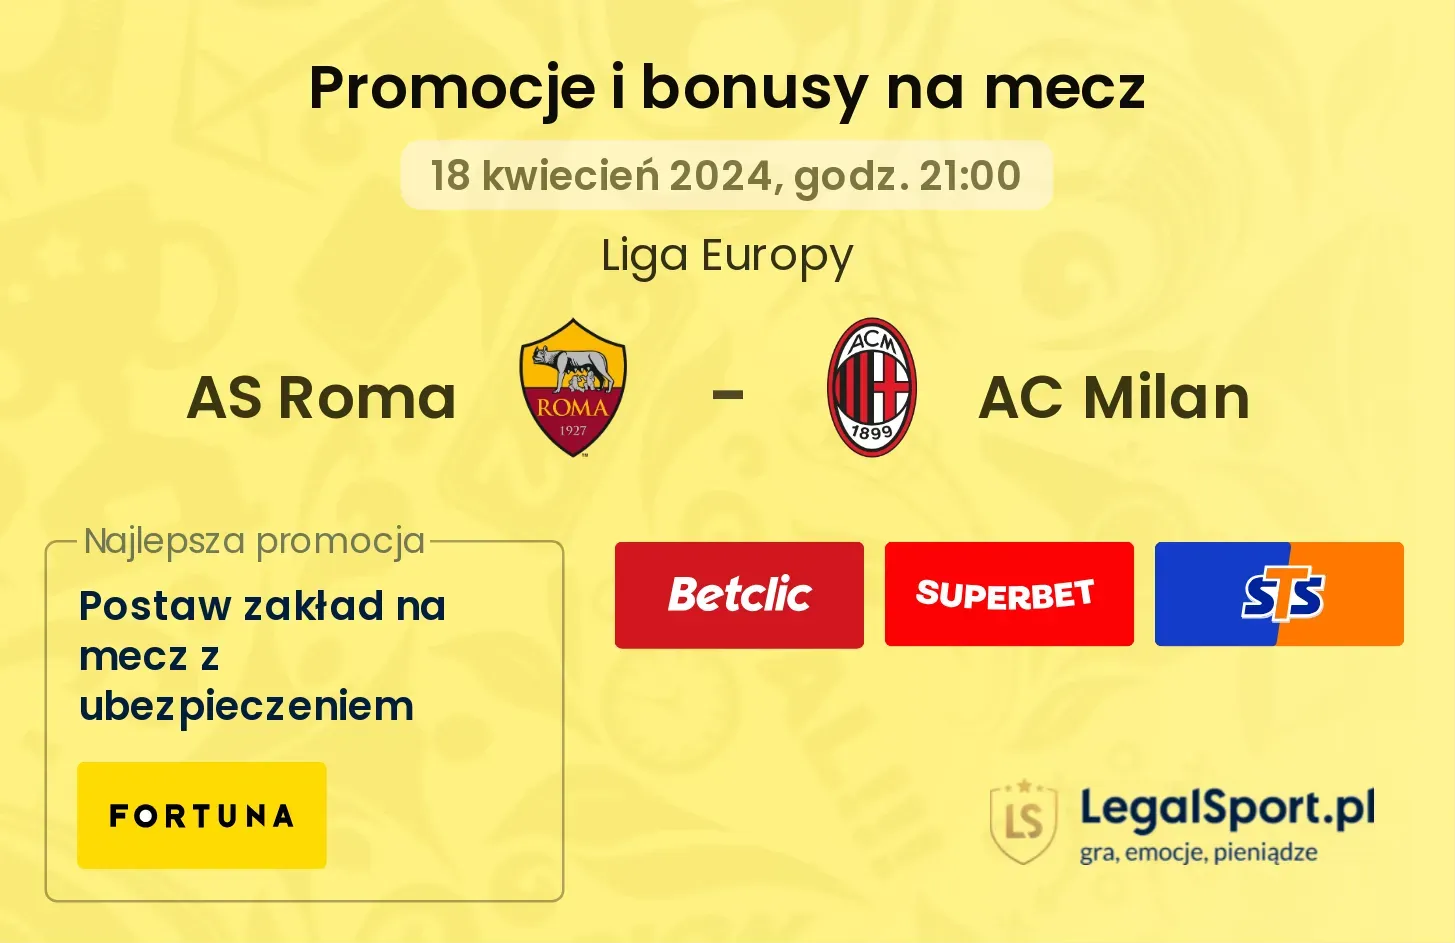 AS Roma - AC Milan promocje bonusy na mecz